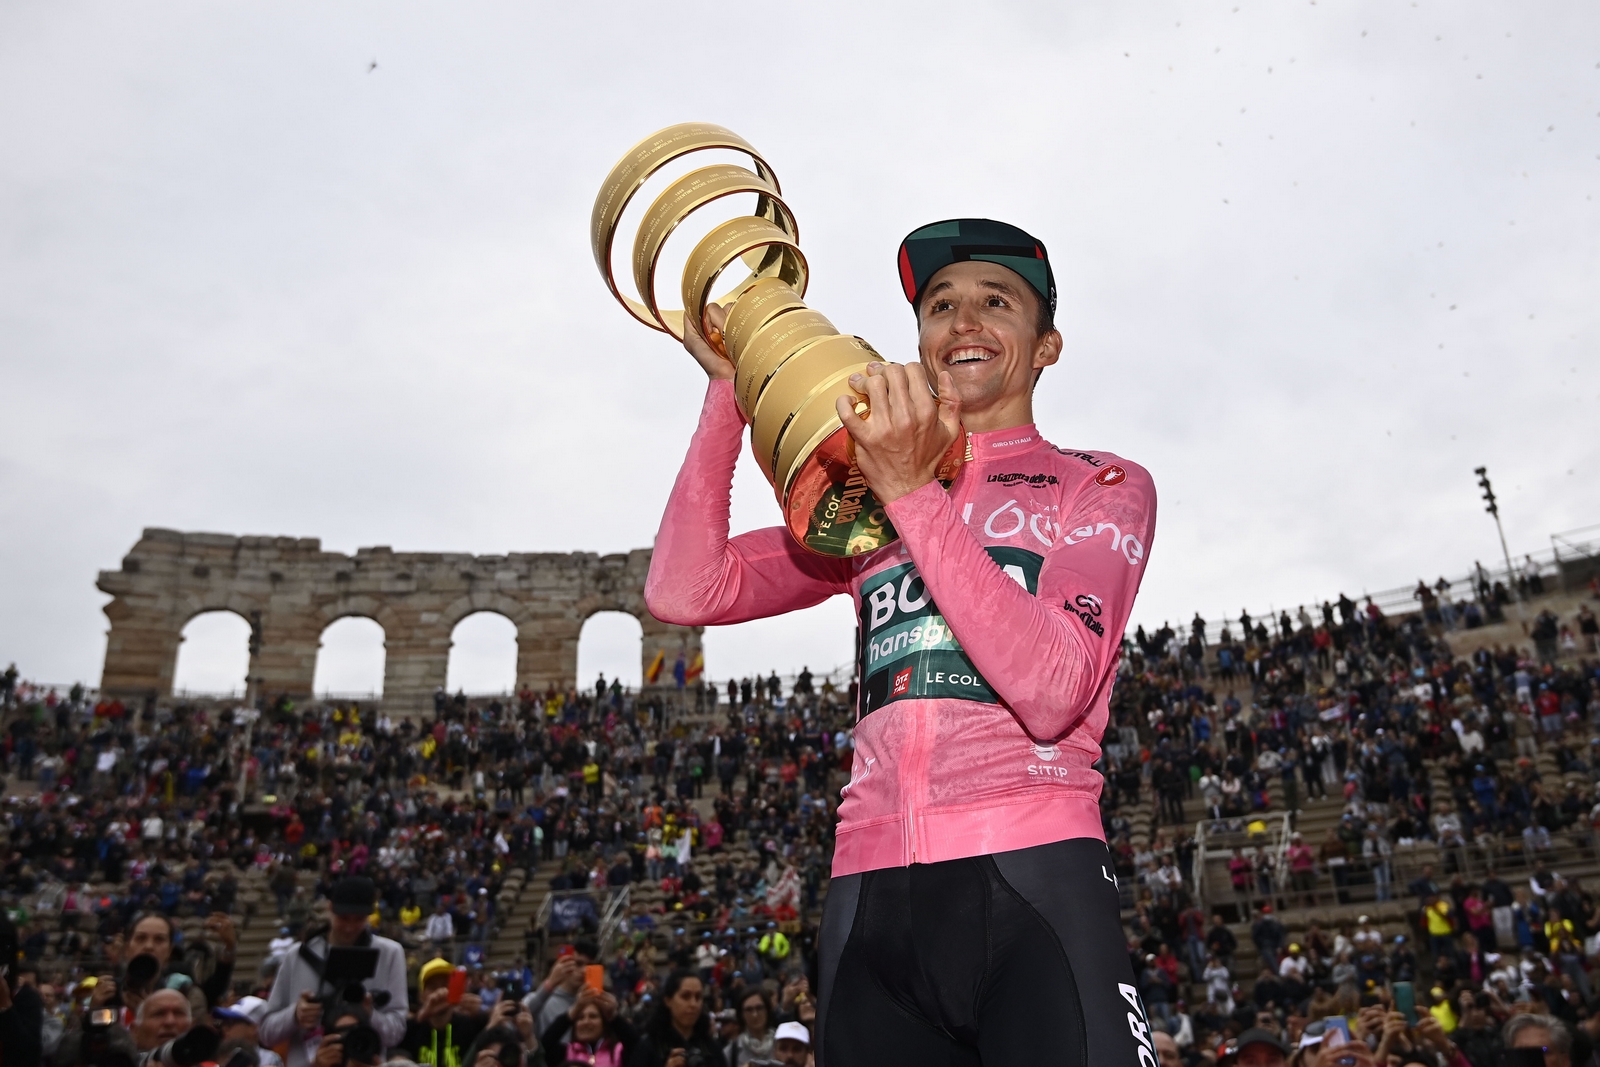 Squadre invitate per Giro d’Italia, Milano-Sanremo, Strade Bianche e Tirreno-Adriatico